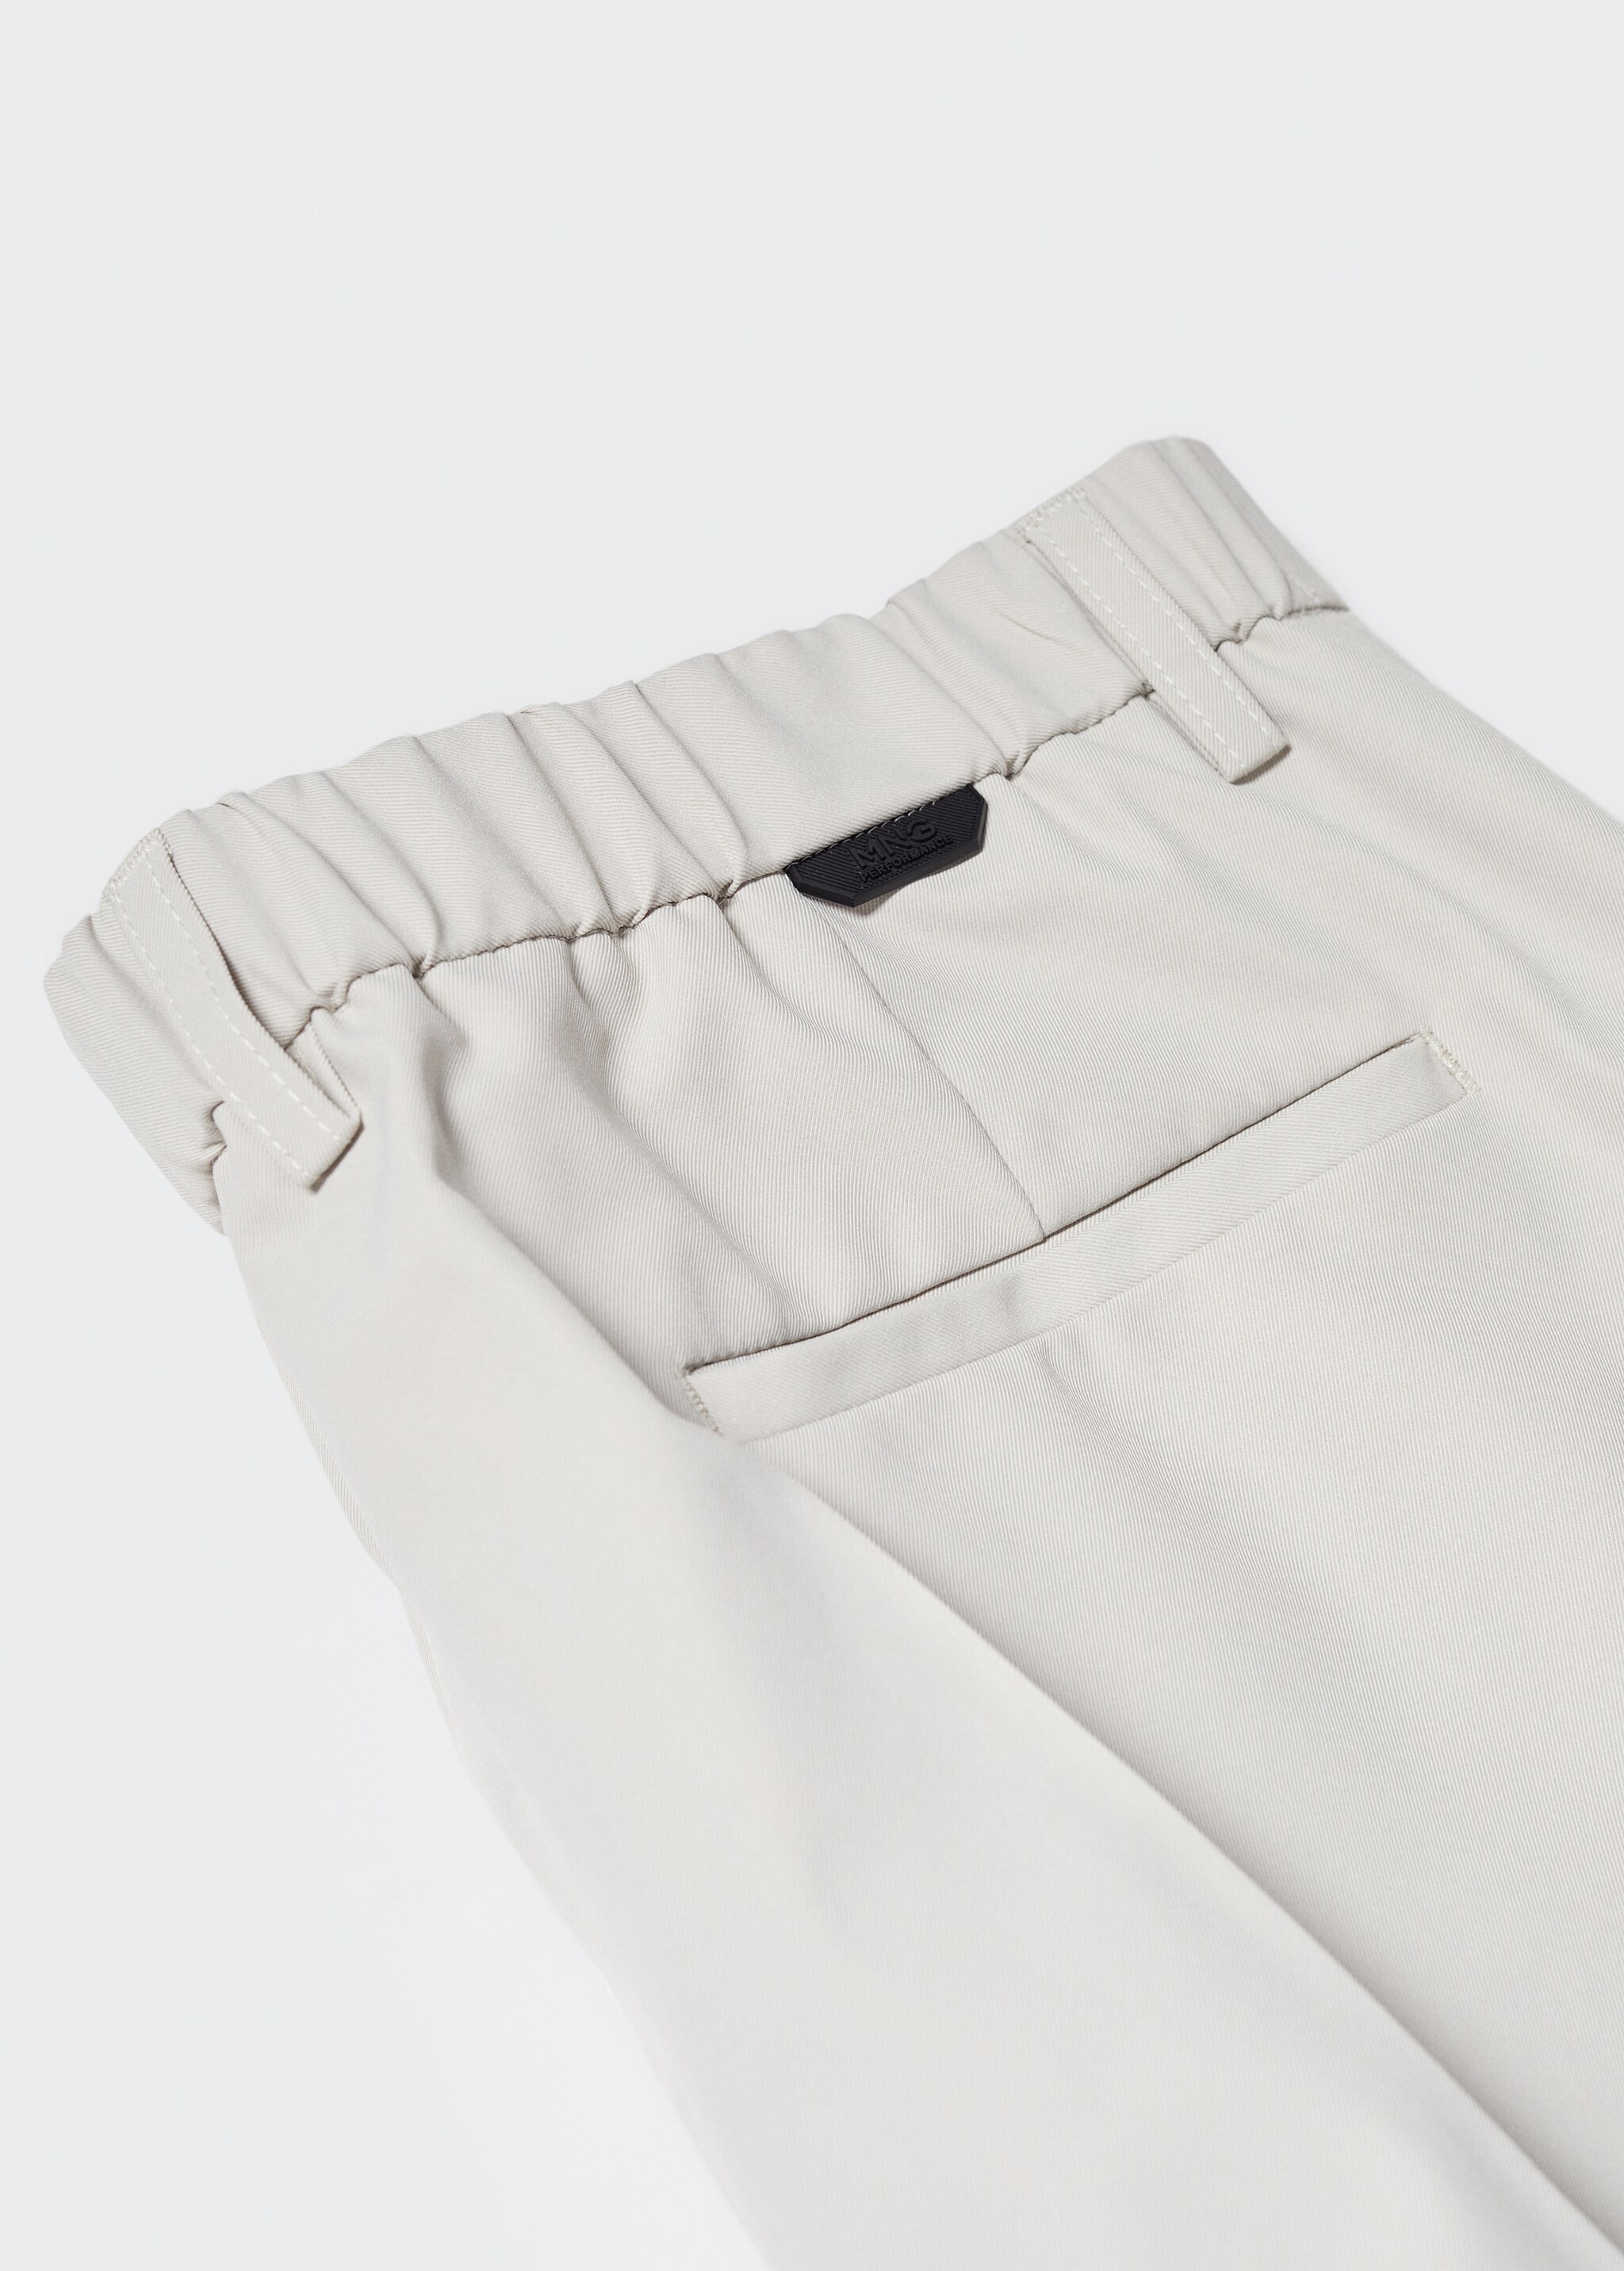 Pantalón traje slim fit tejido técnico - Detalle del artículo 8